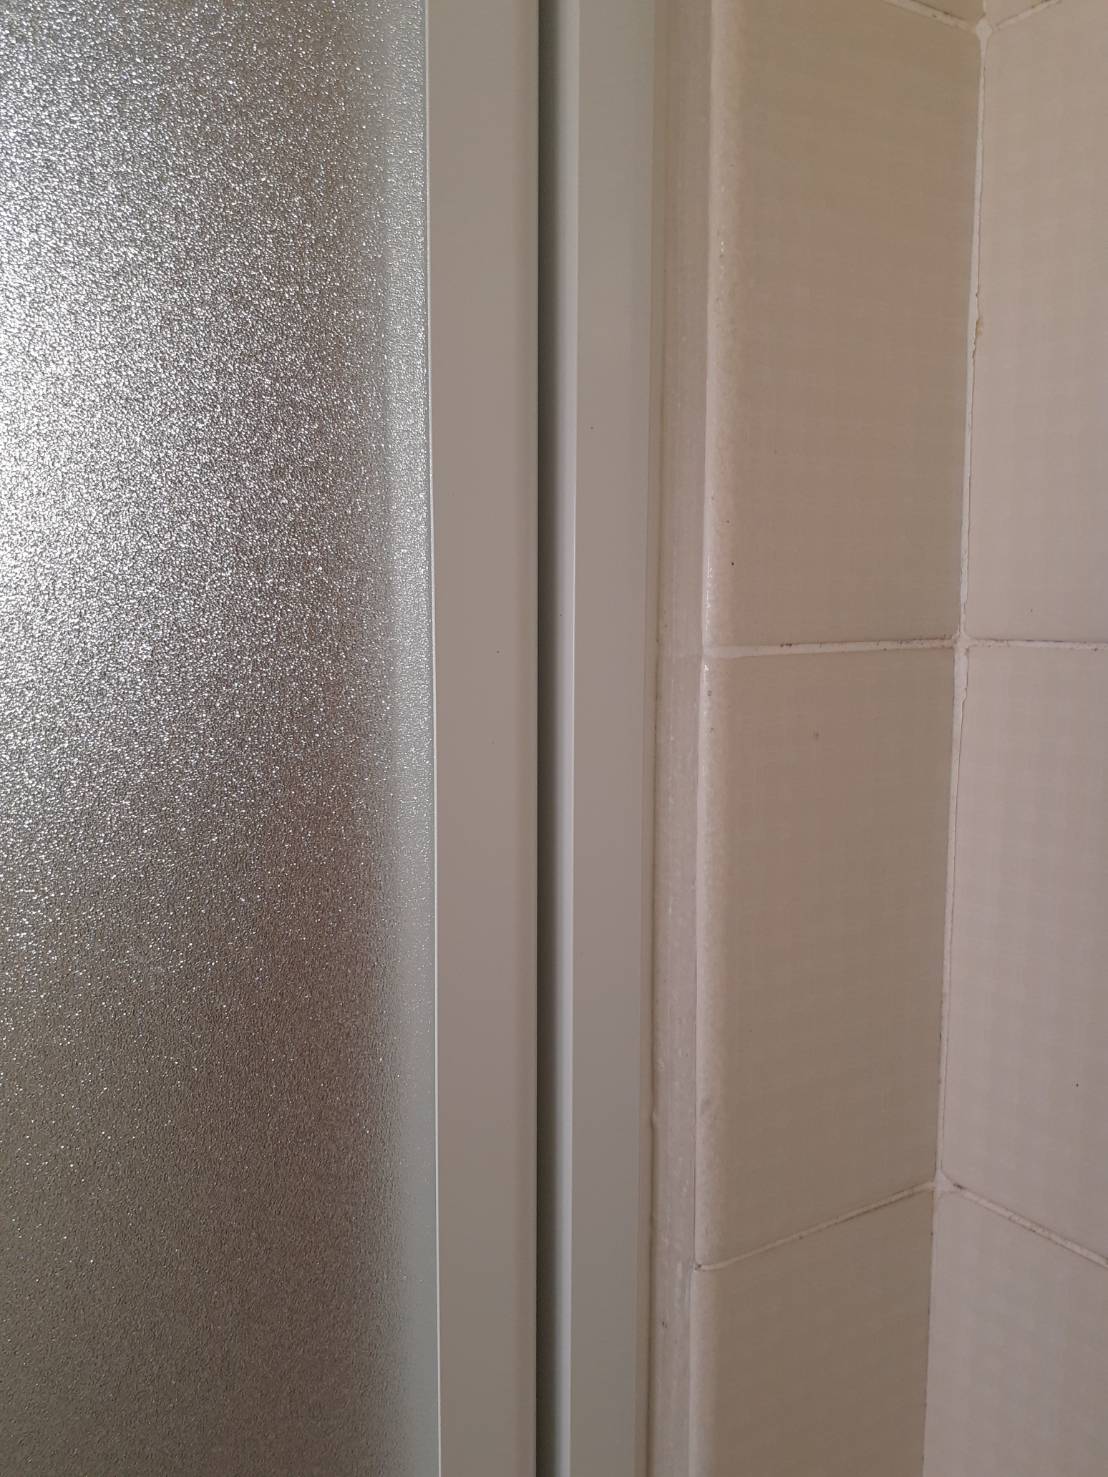 世田谷区瀬田でカバー工法だと古い浴室扉の枠はどこまで隠れるか検証